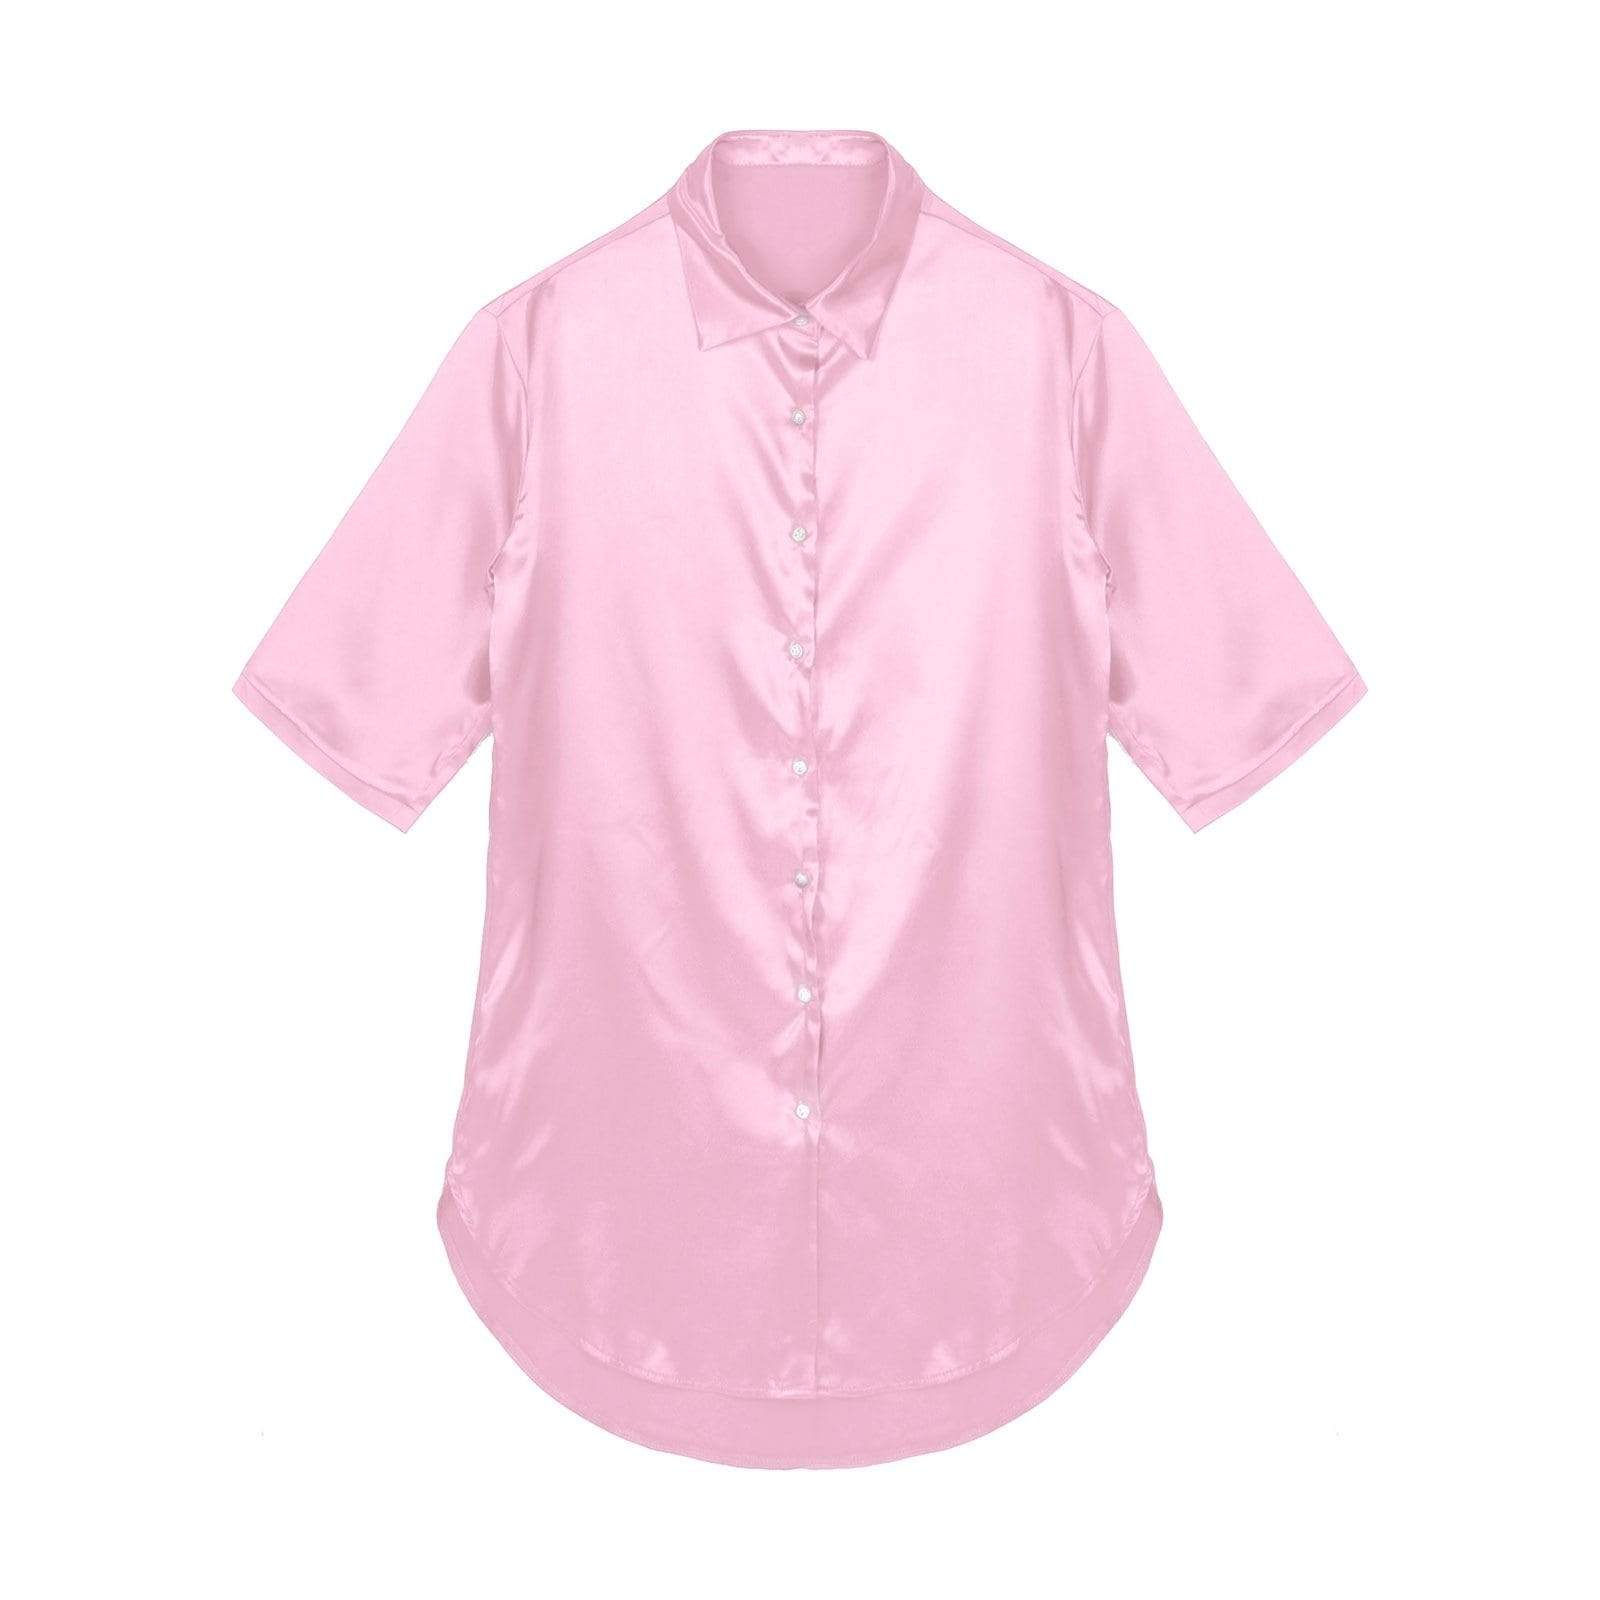 Kinky Cloth 200000346 Pink / S Satin Nightgown 3/4 Sleeve Sleepwear